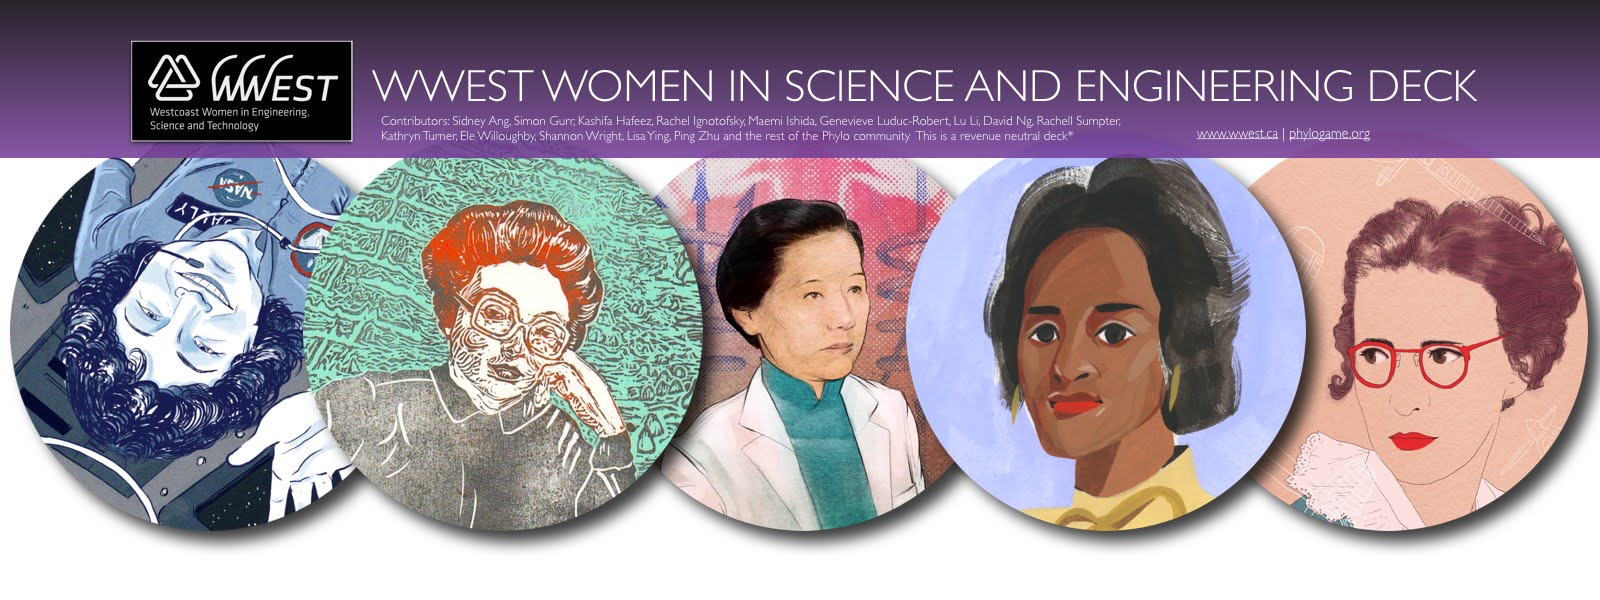 Science, she did – Giornata Internazionale delle donne e ragazze nella scienza